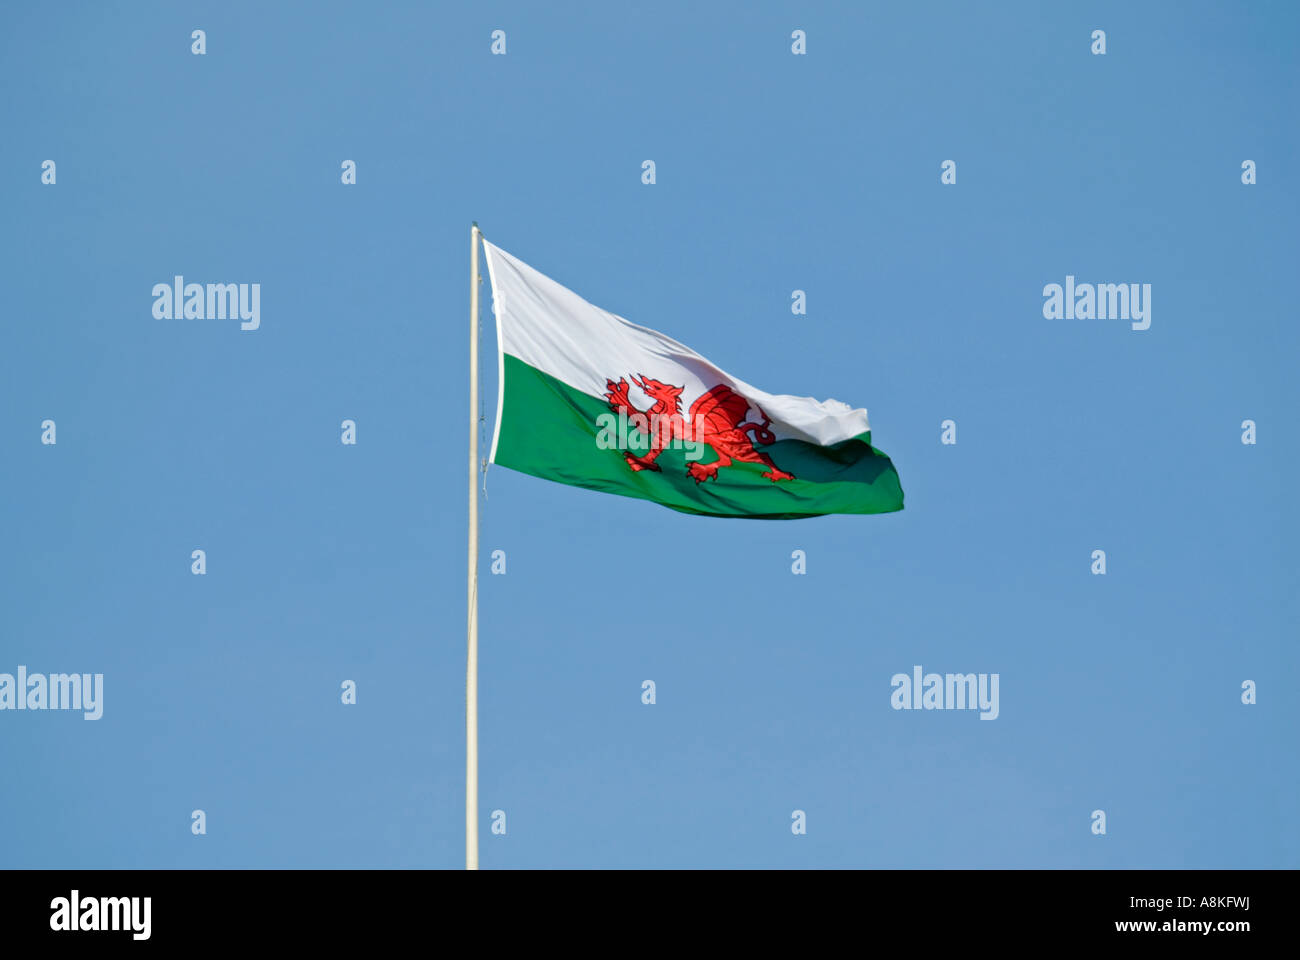 De près de l'horizontale du drapeau gallois de haut vol sur le château de Cardiff [Castell Caerdydd] contre un ciel bleu Banque D'Images